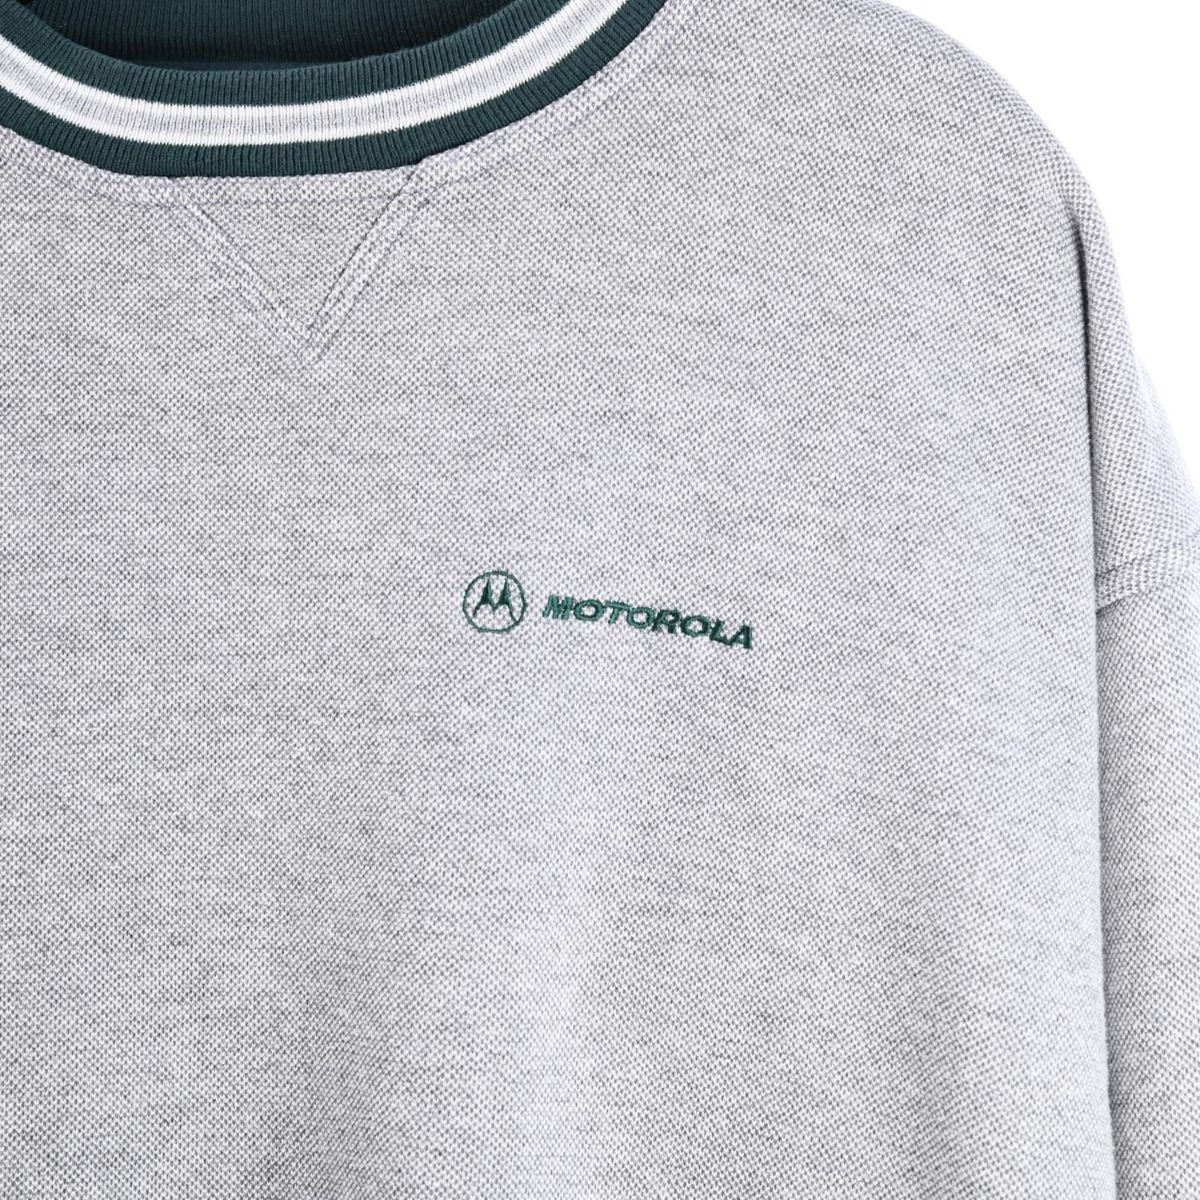 Motorola Sweatshirt